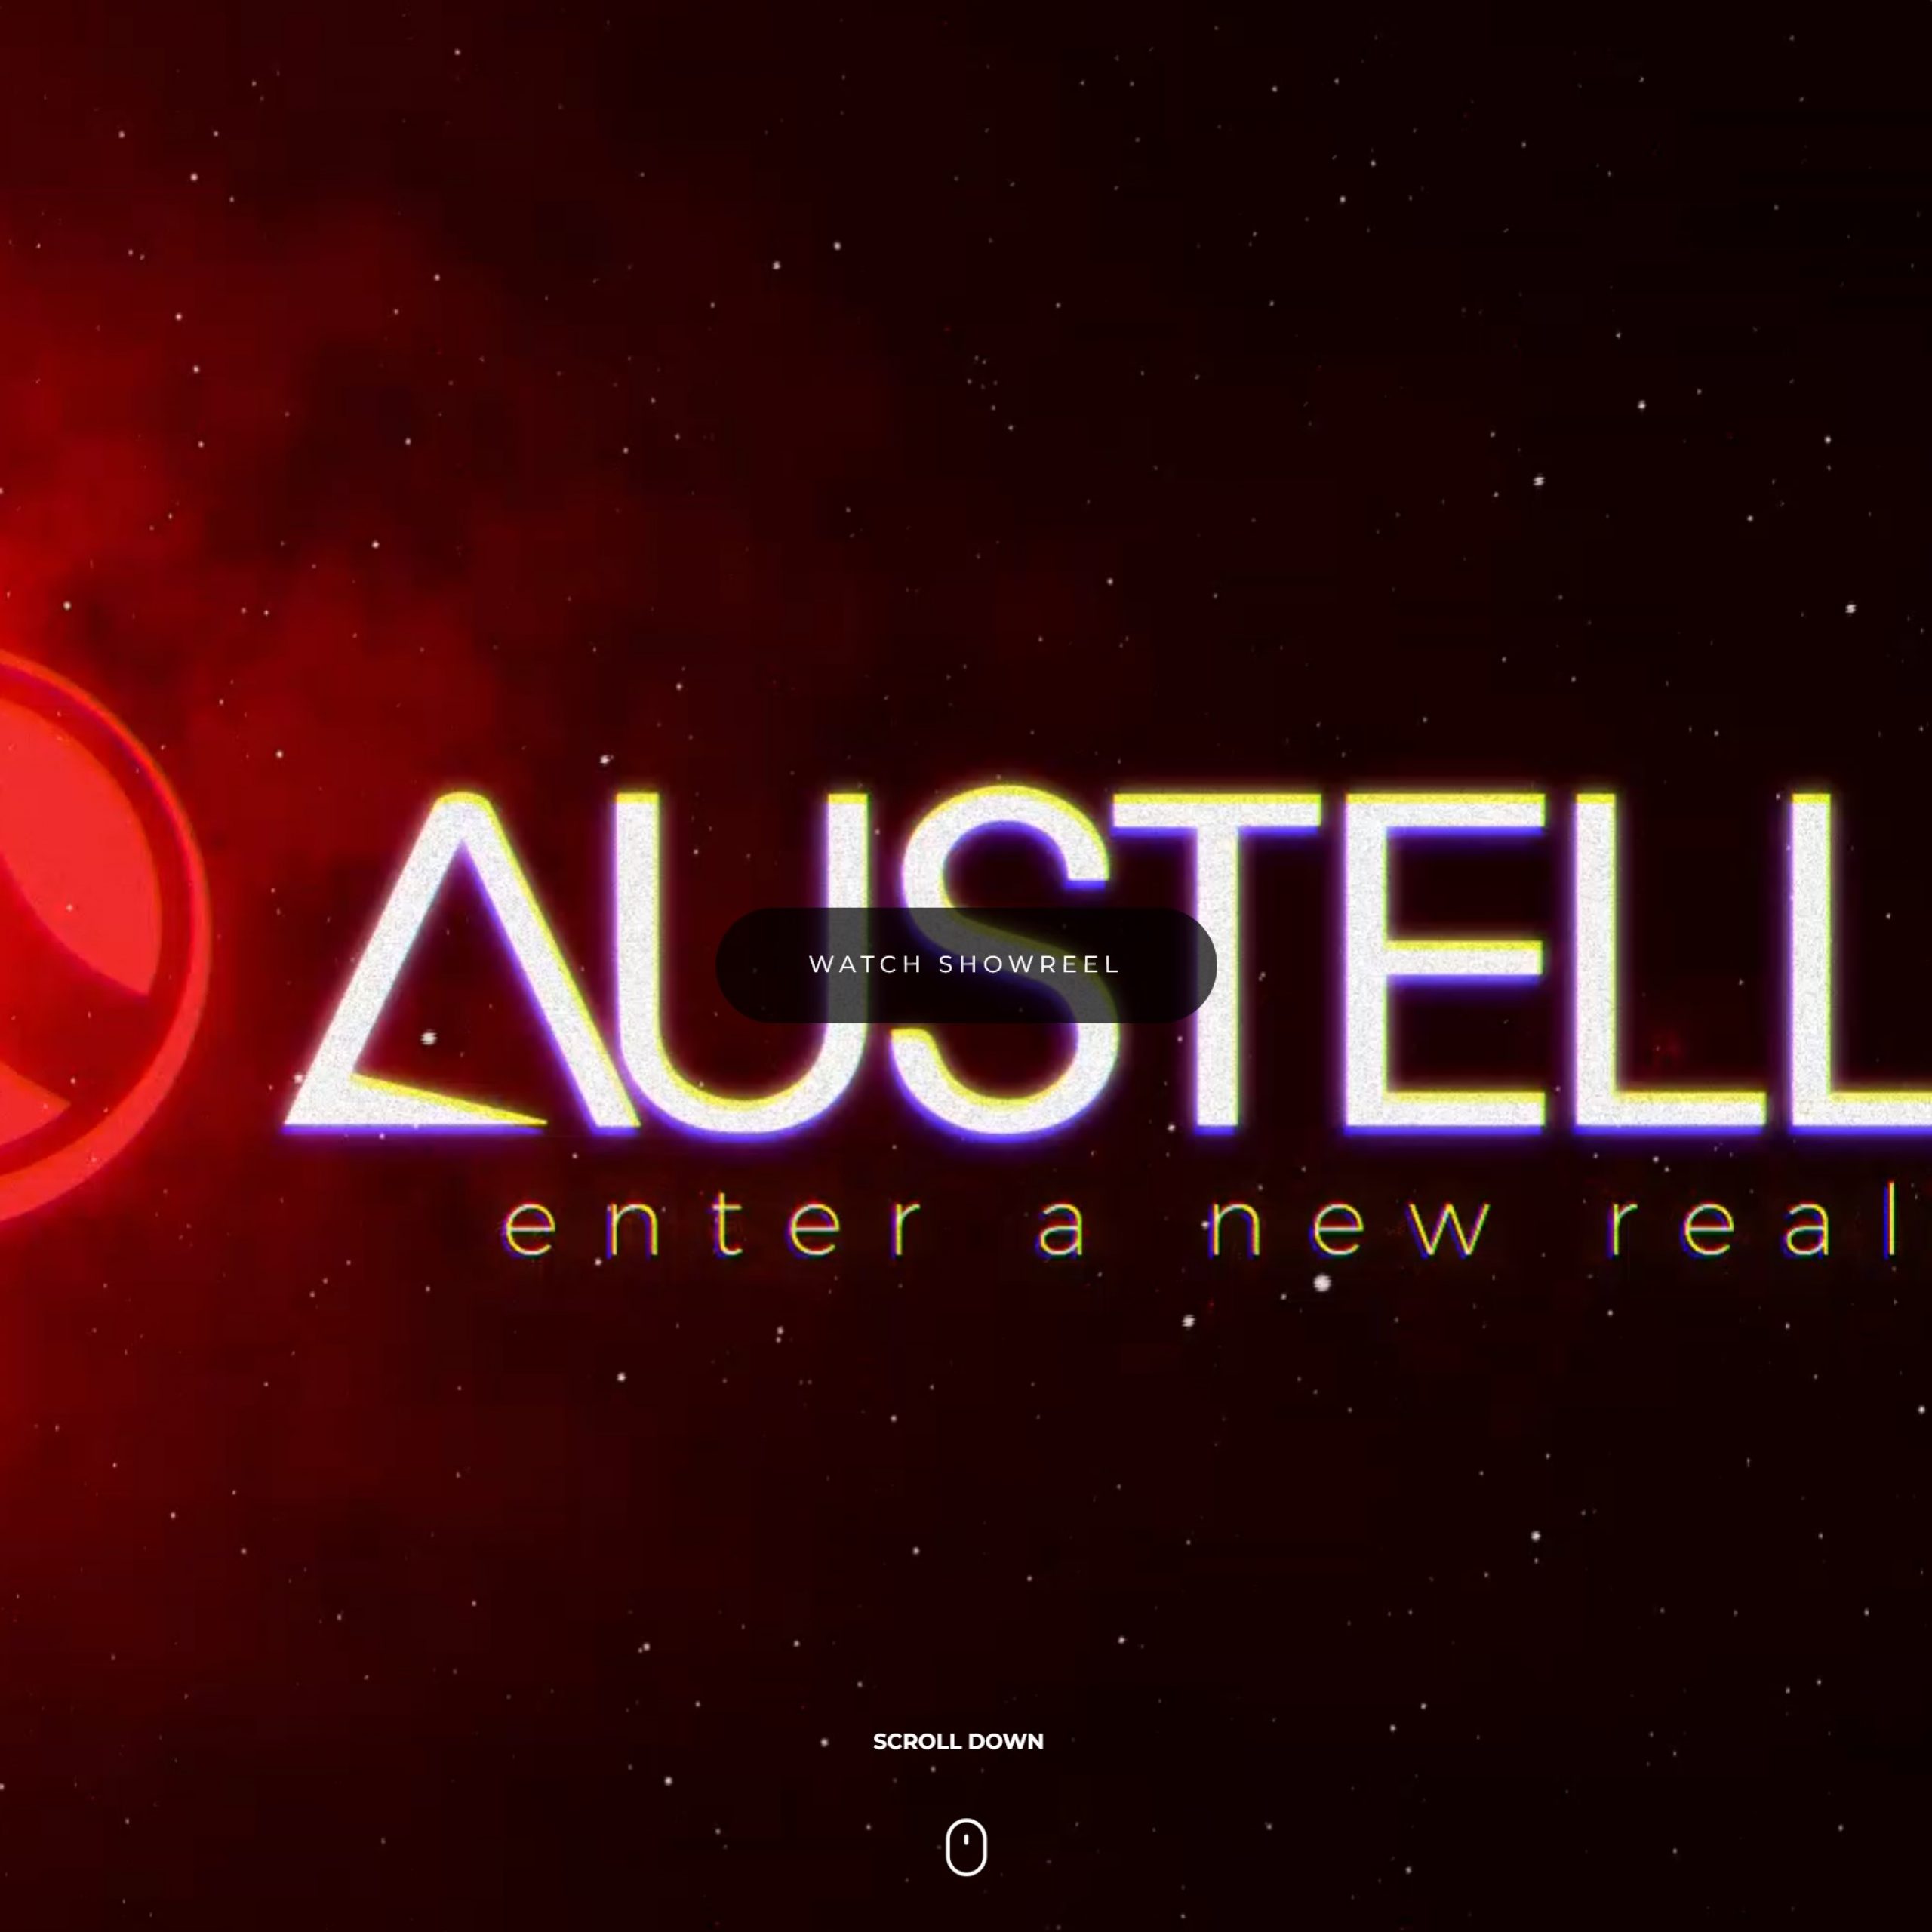 Austella ins image responsive design